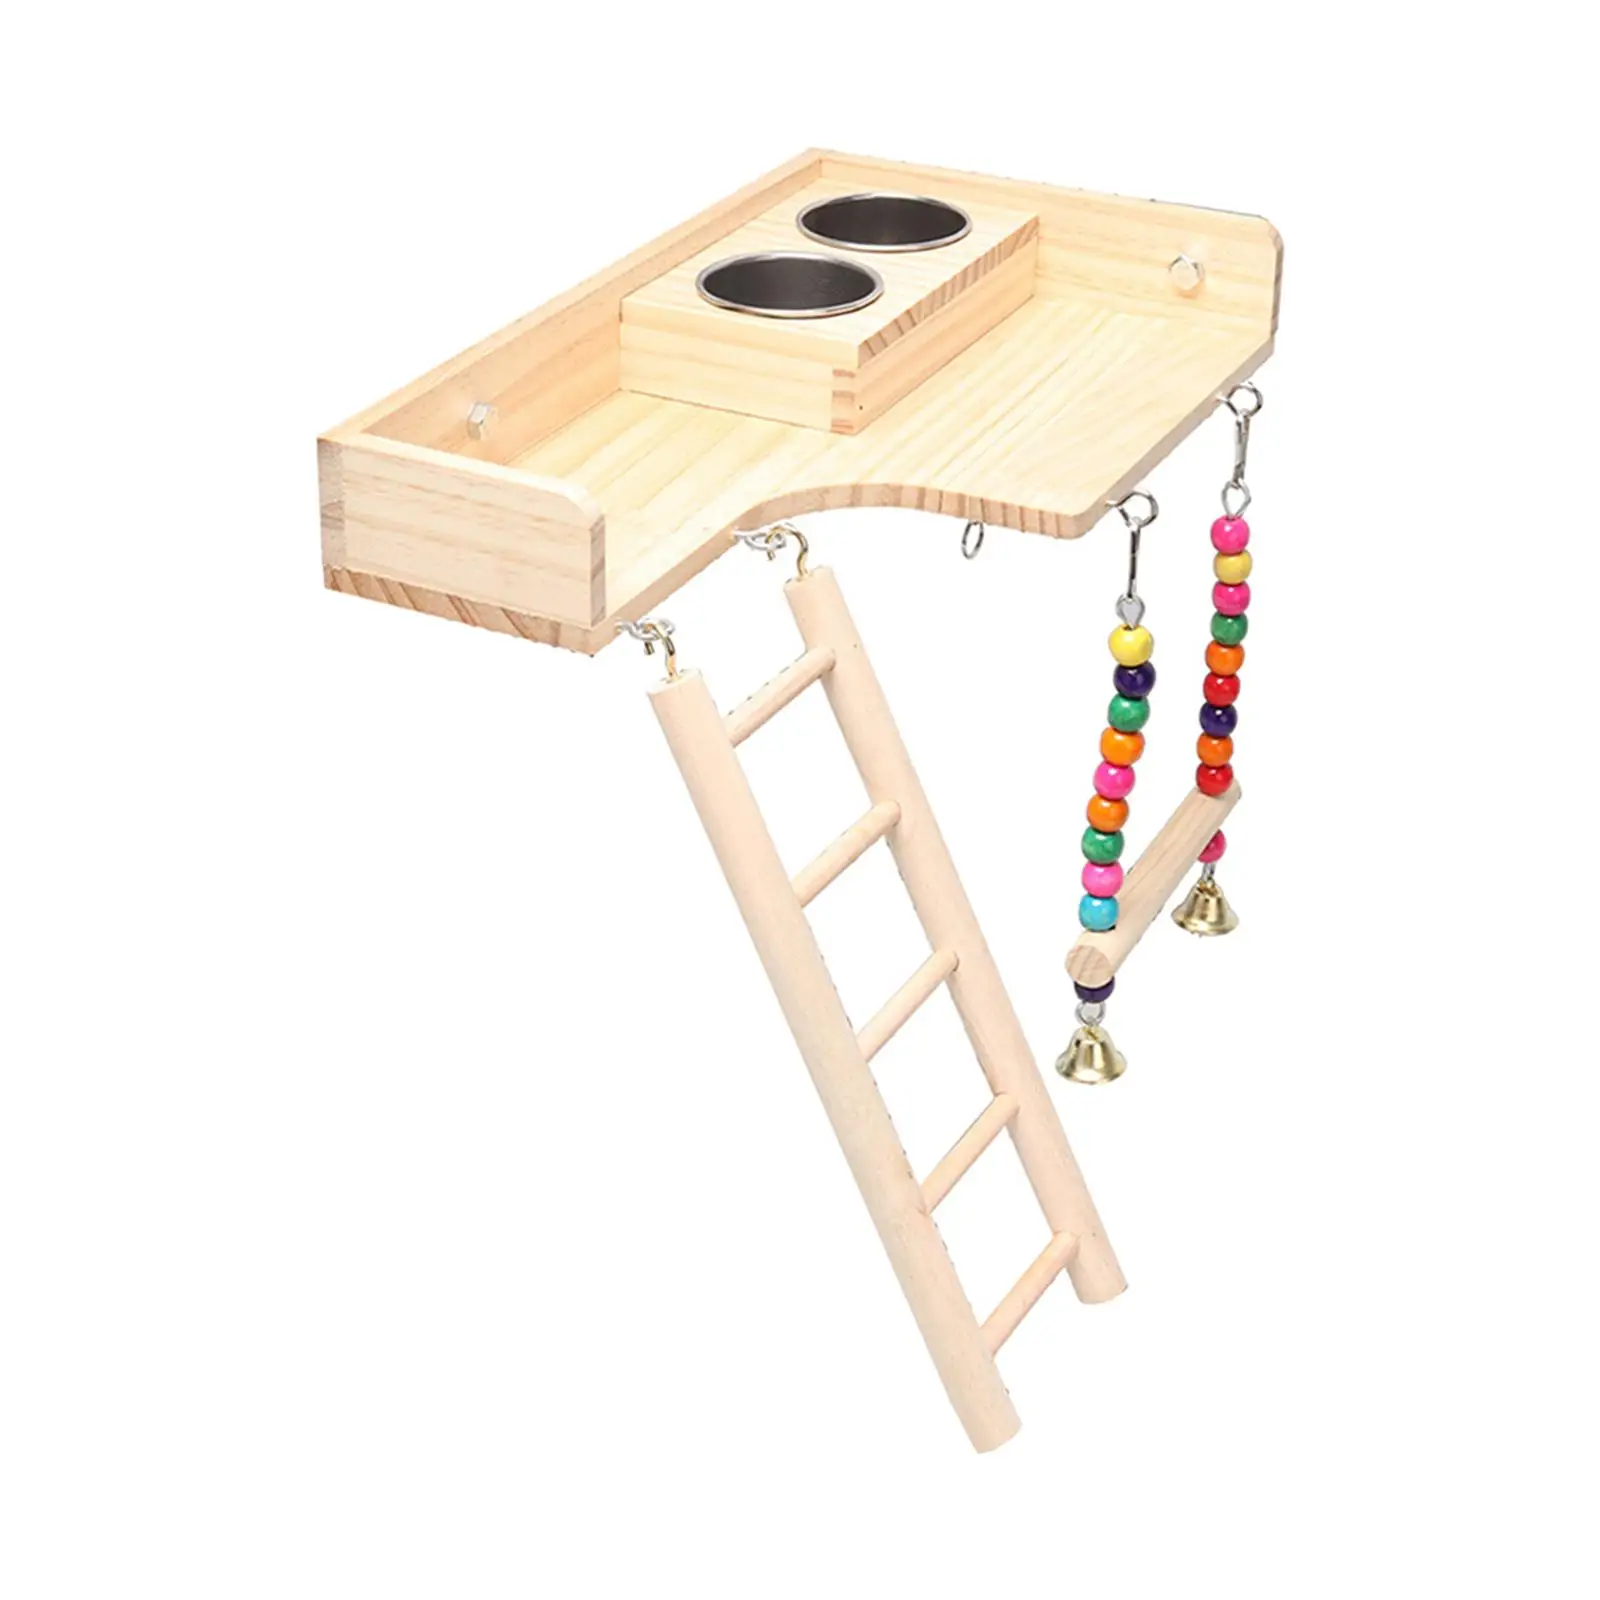 Pet Bird Parrot Playground Wooden Ladder Toy Interactive Platform